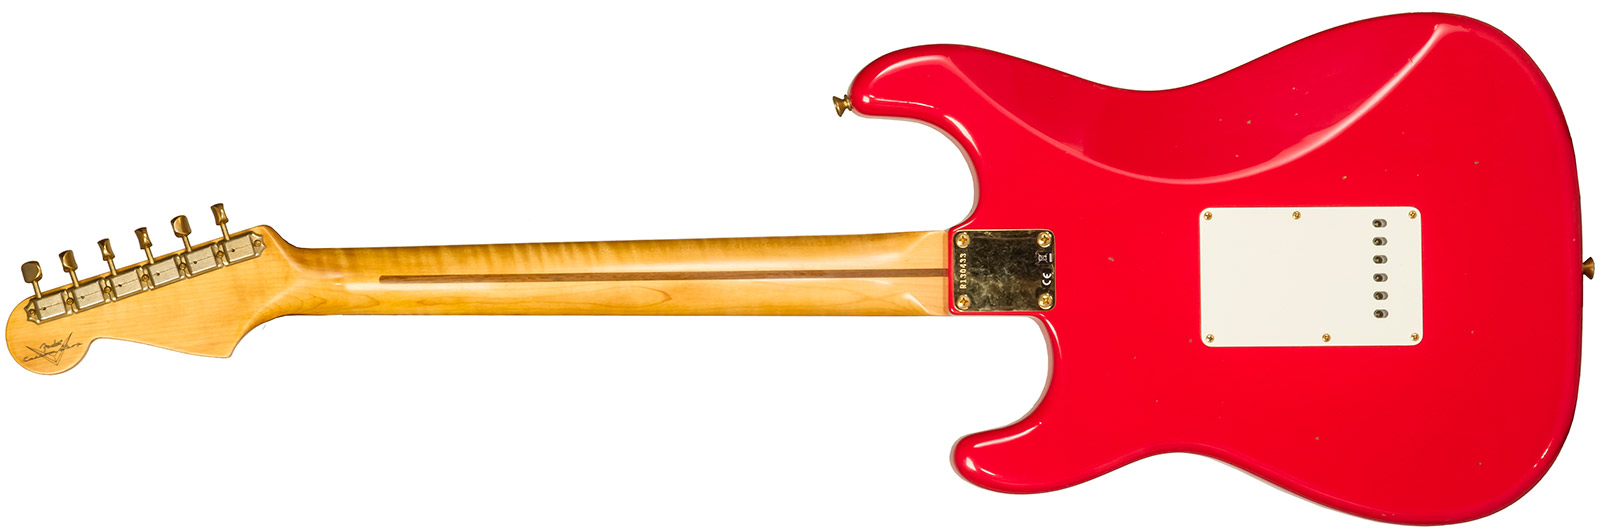 Fender Custom Shop Strat 1956 3s Trem Mn #r130433 - Journeyman Relic Fiesta Red - Guitare Électrique Forme Str - Variation 1